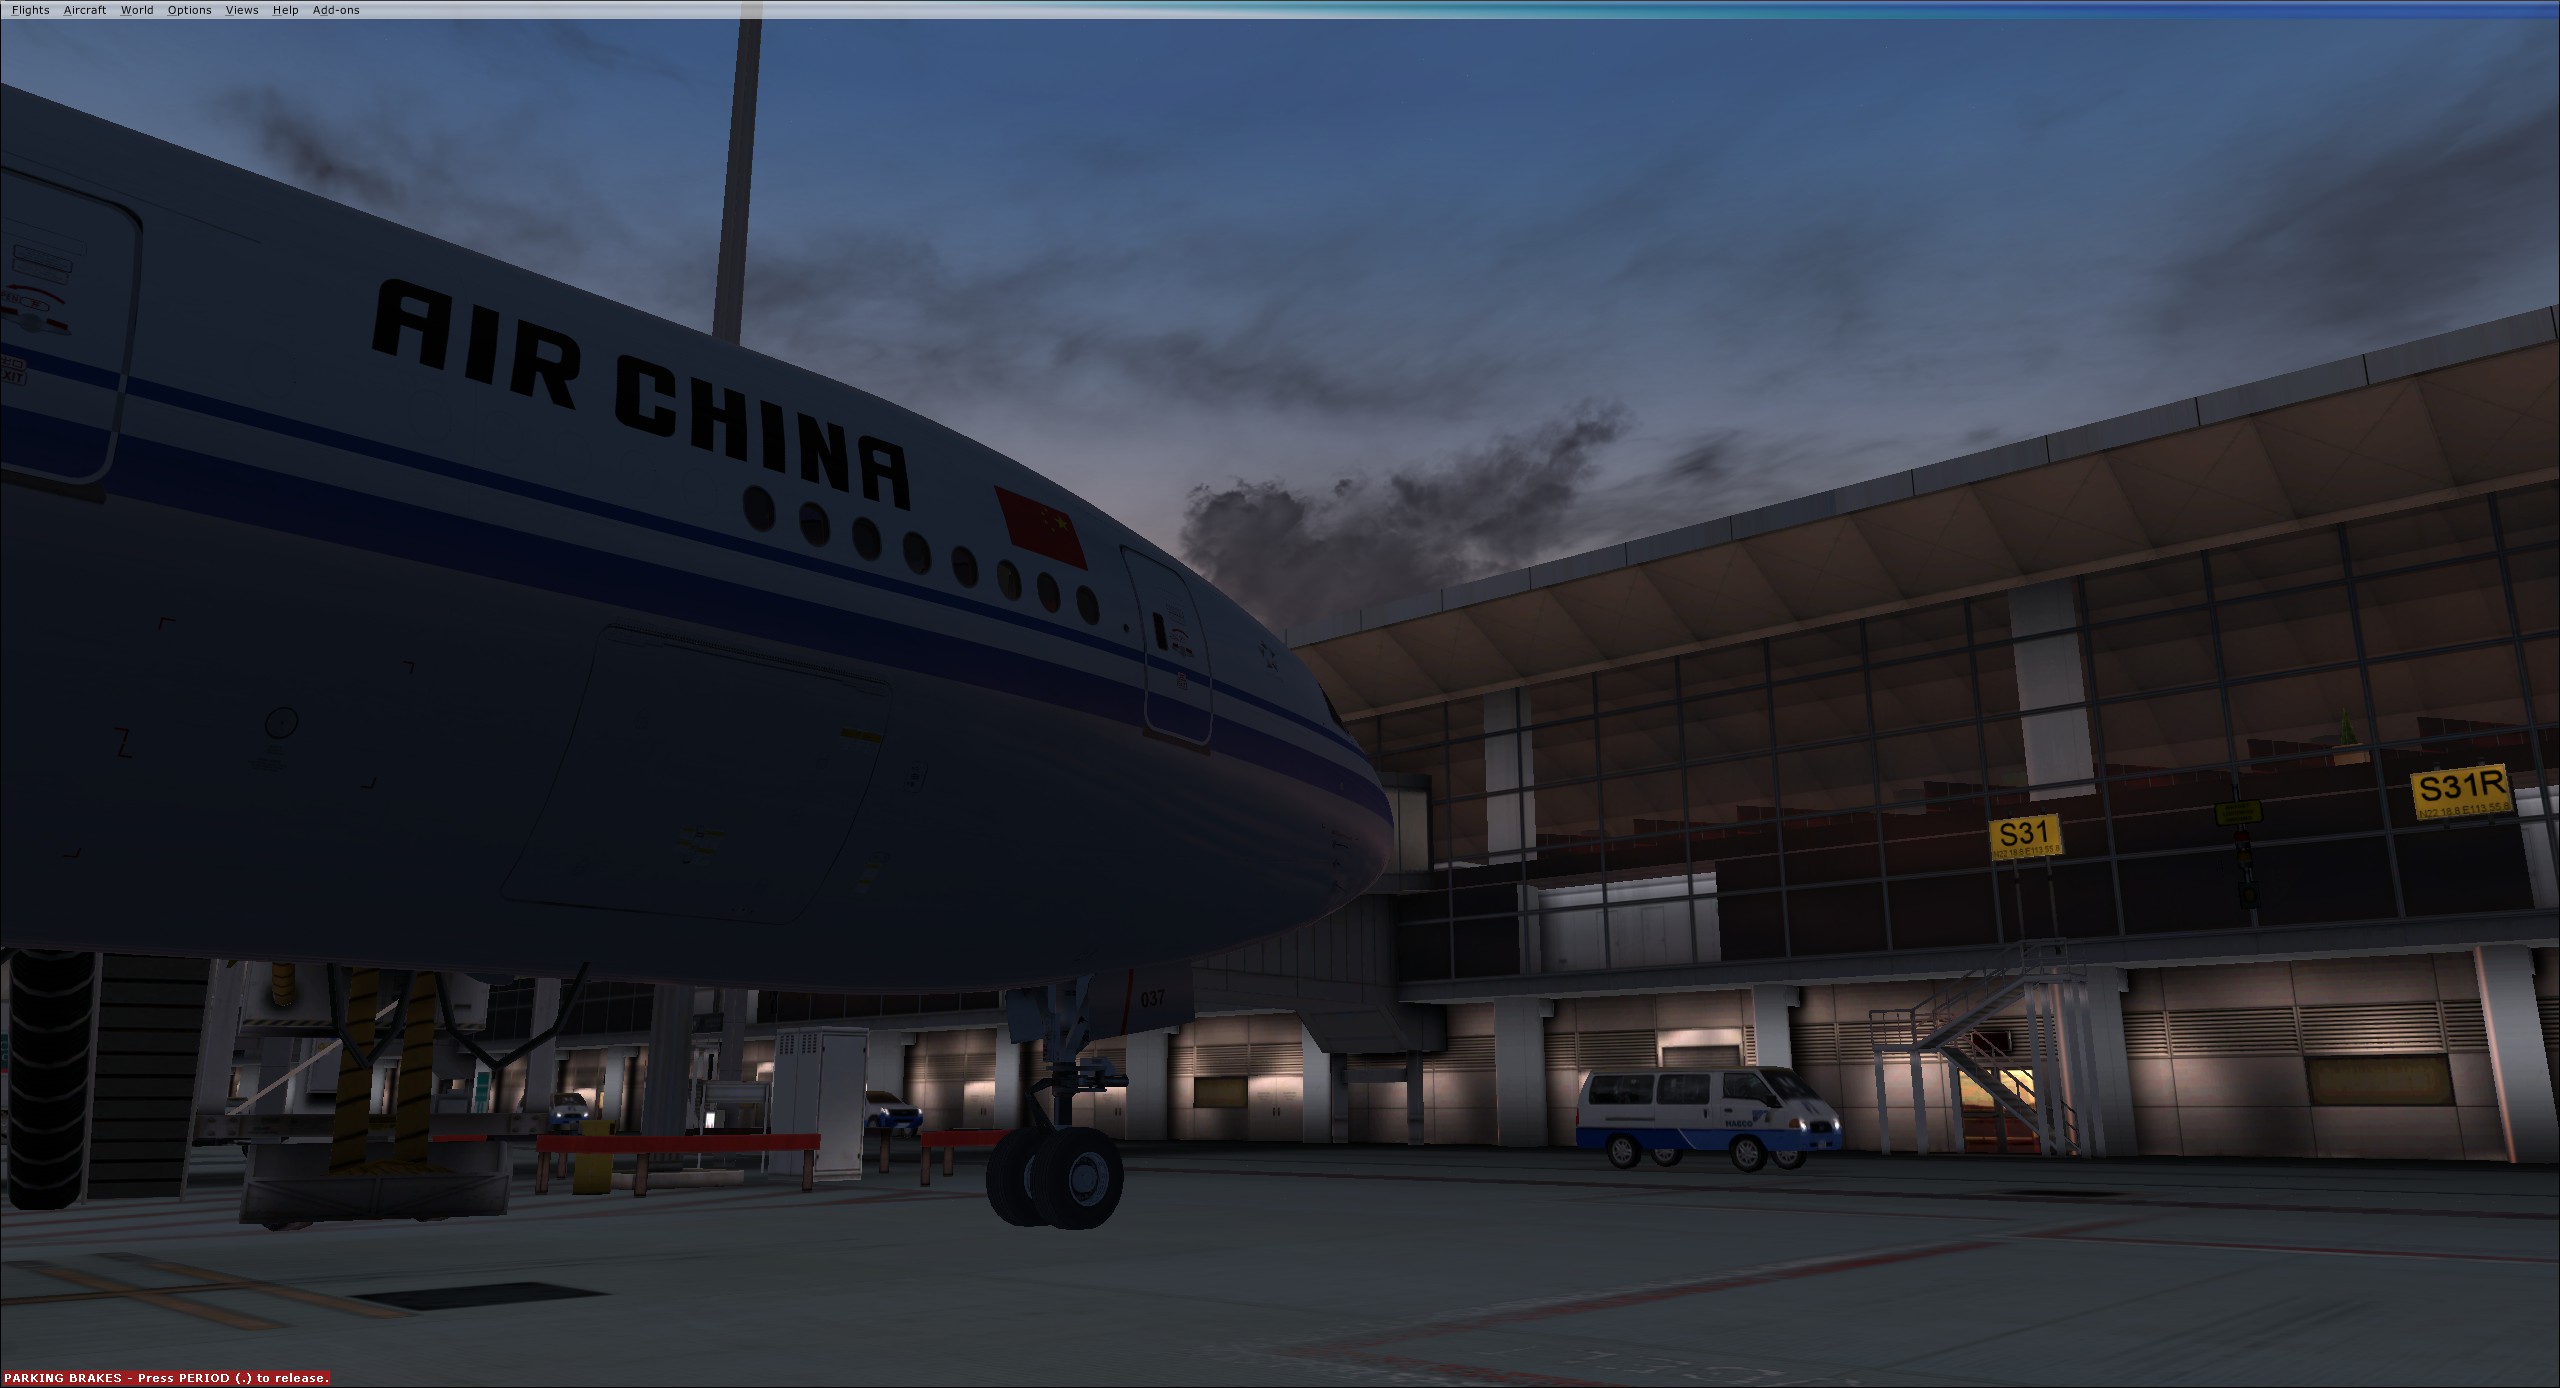 AirChina B77W VHHH-4690 